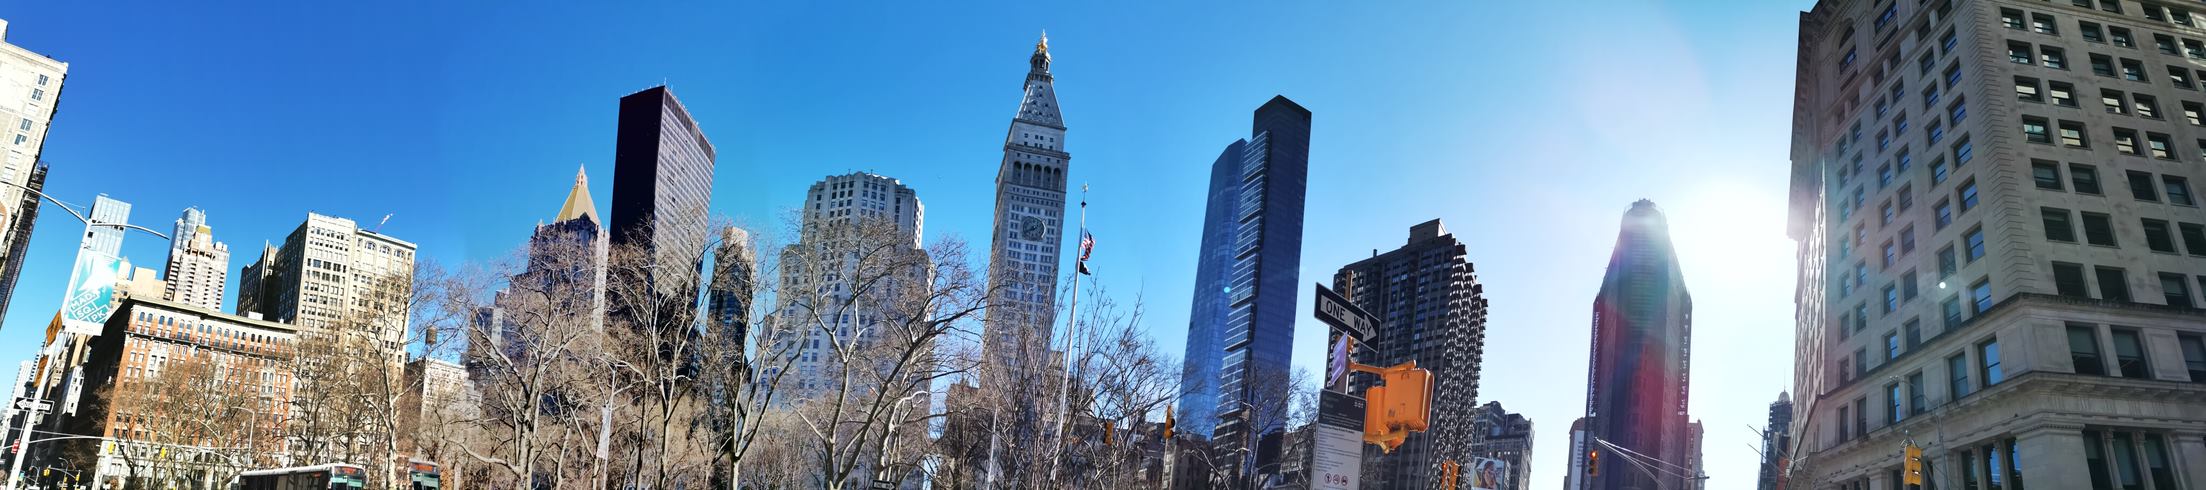 Hochhäuser vor blauem Himmel in New York City